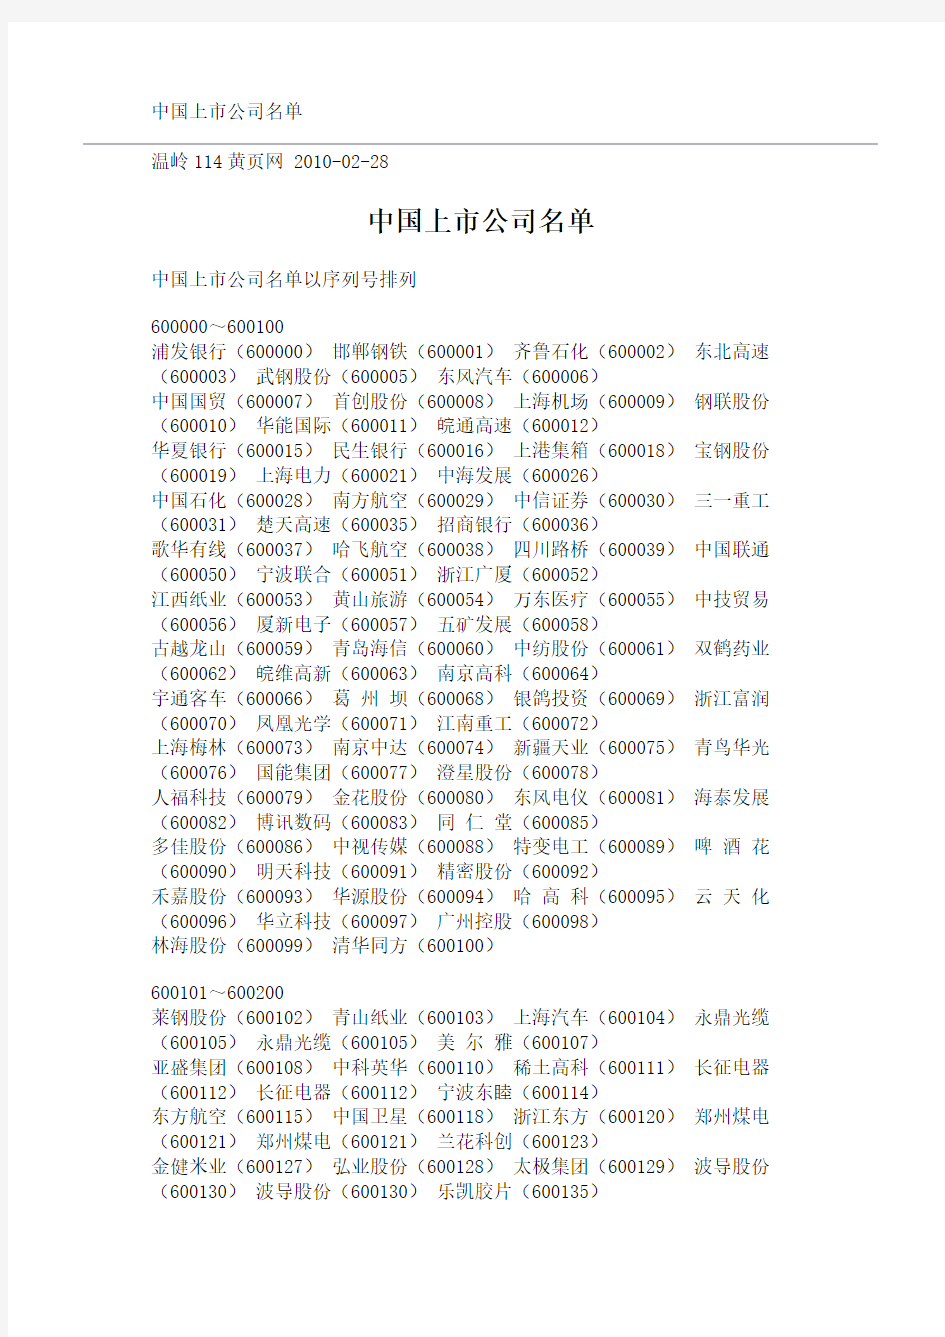 中国上市公司名单